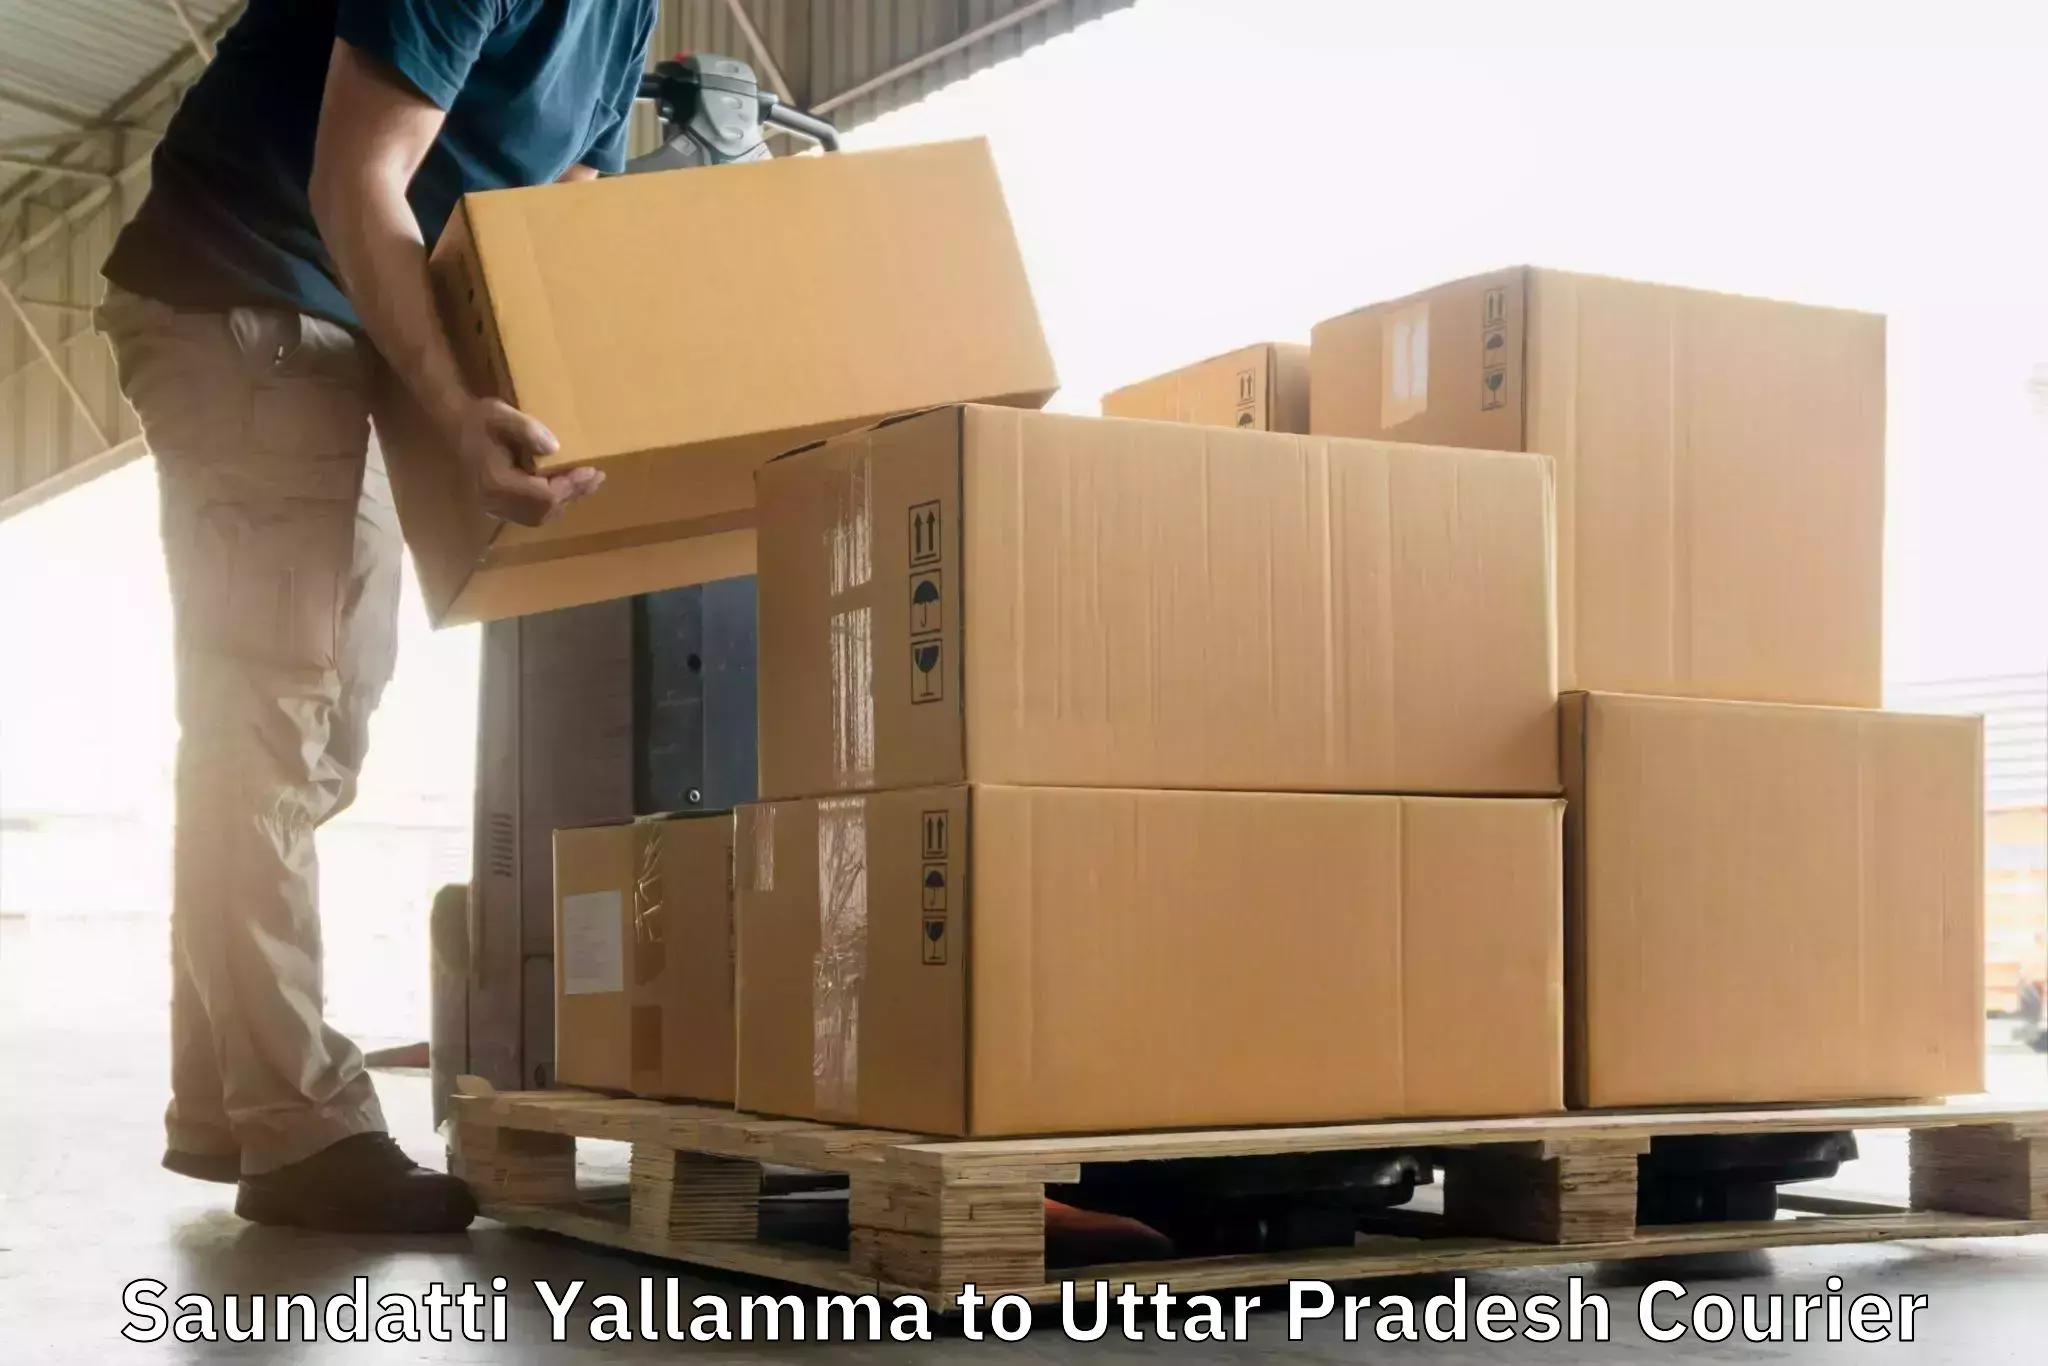 Express postal services Saundatti Yallamma to Chunar